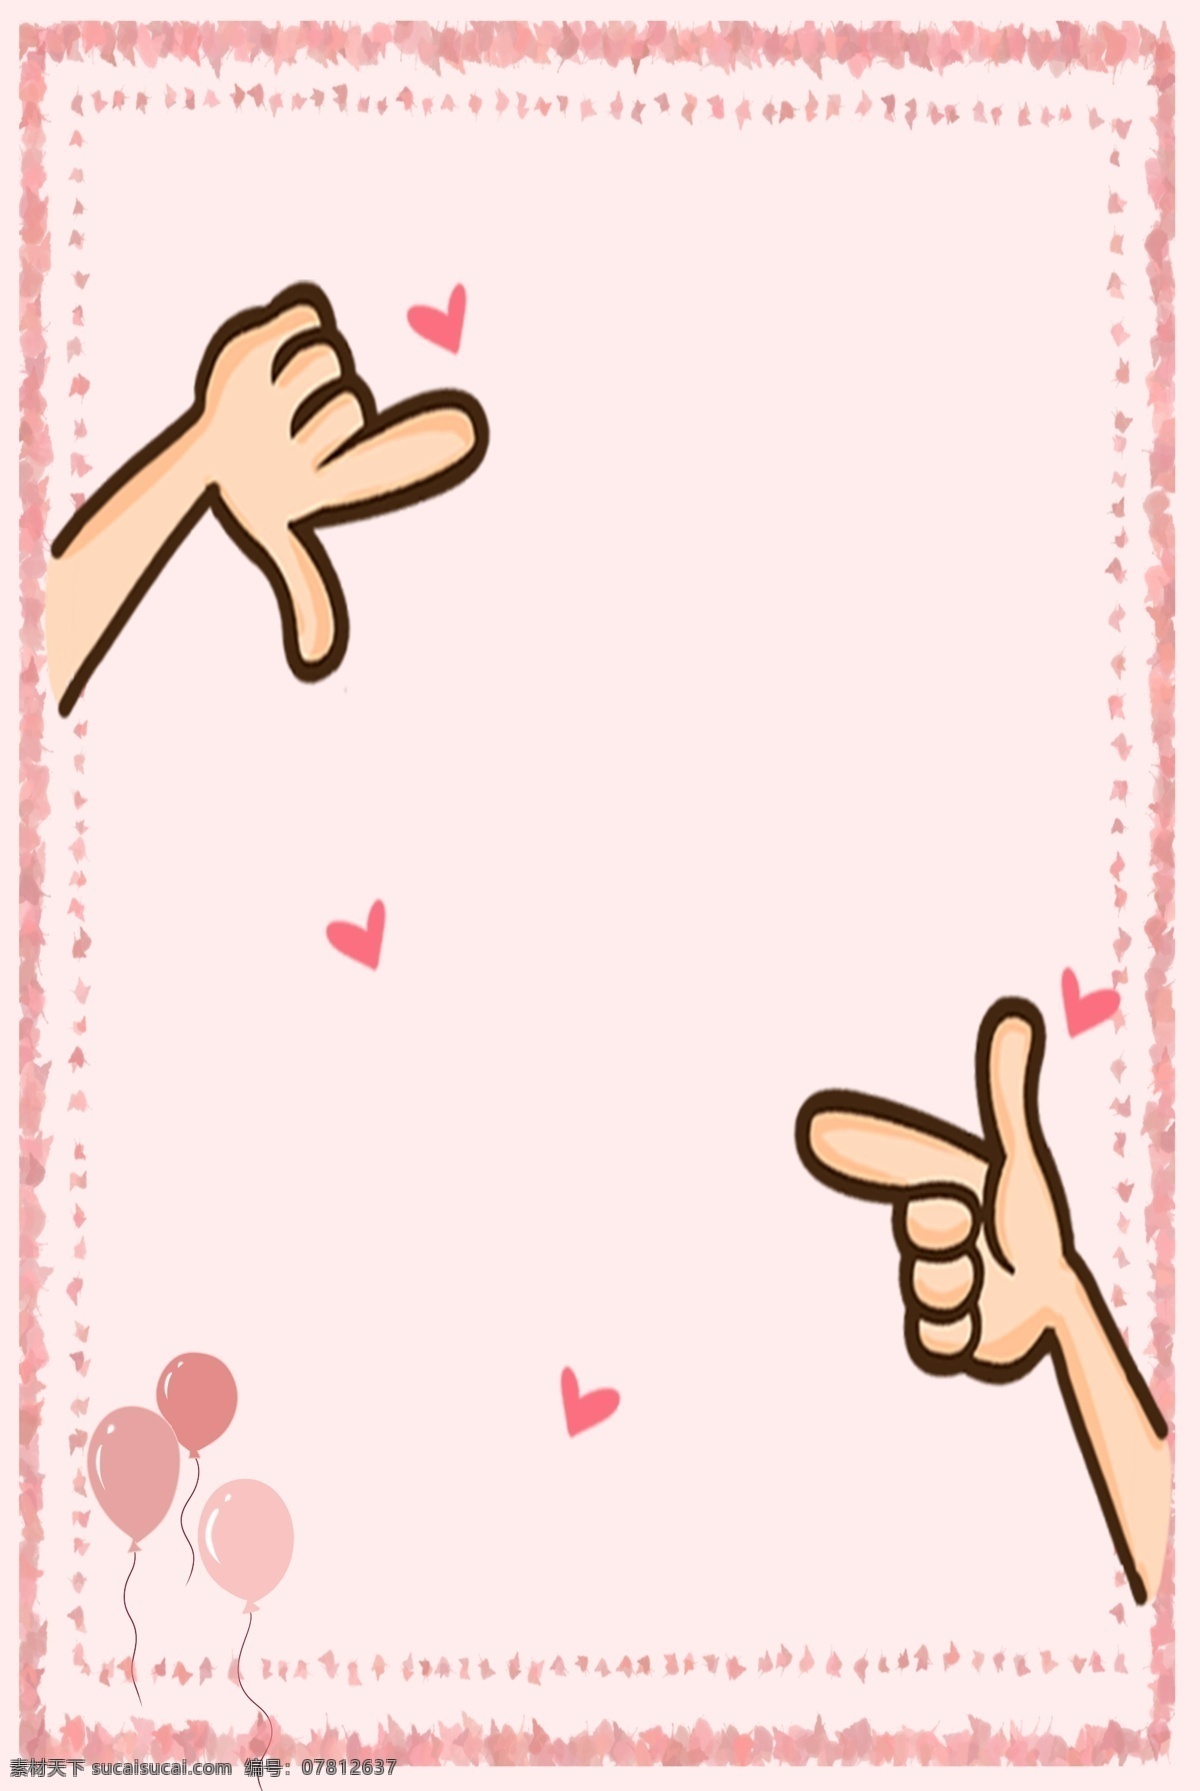 粉色 边框 可爱 卡通 手绘 背景 海报 广告 爱心 手势